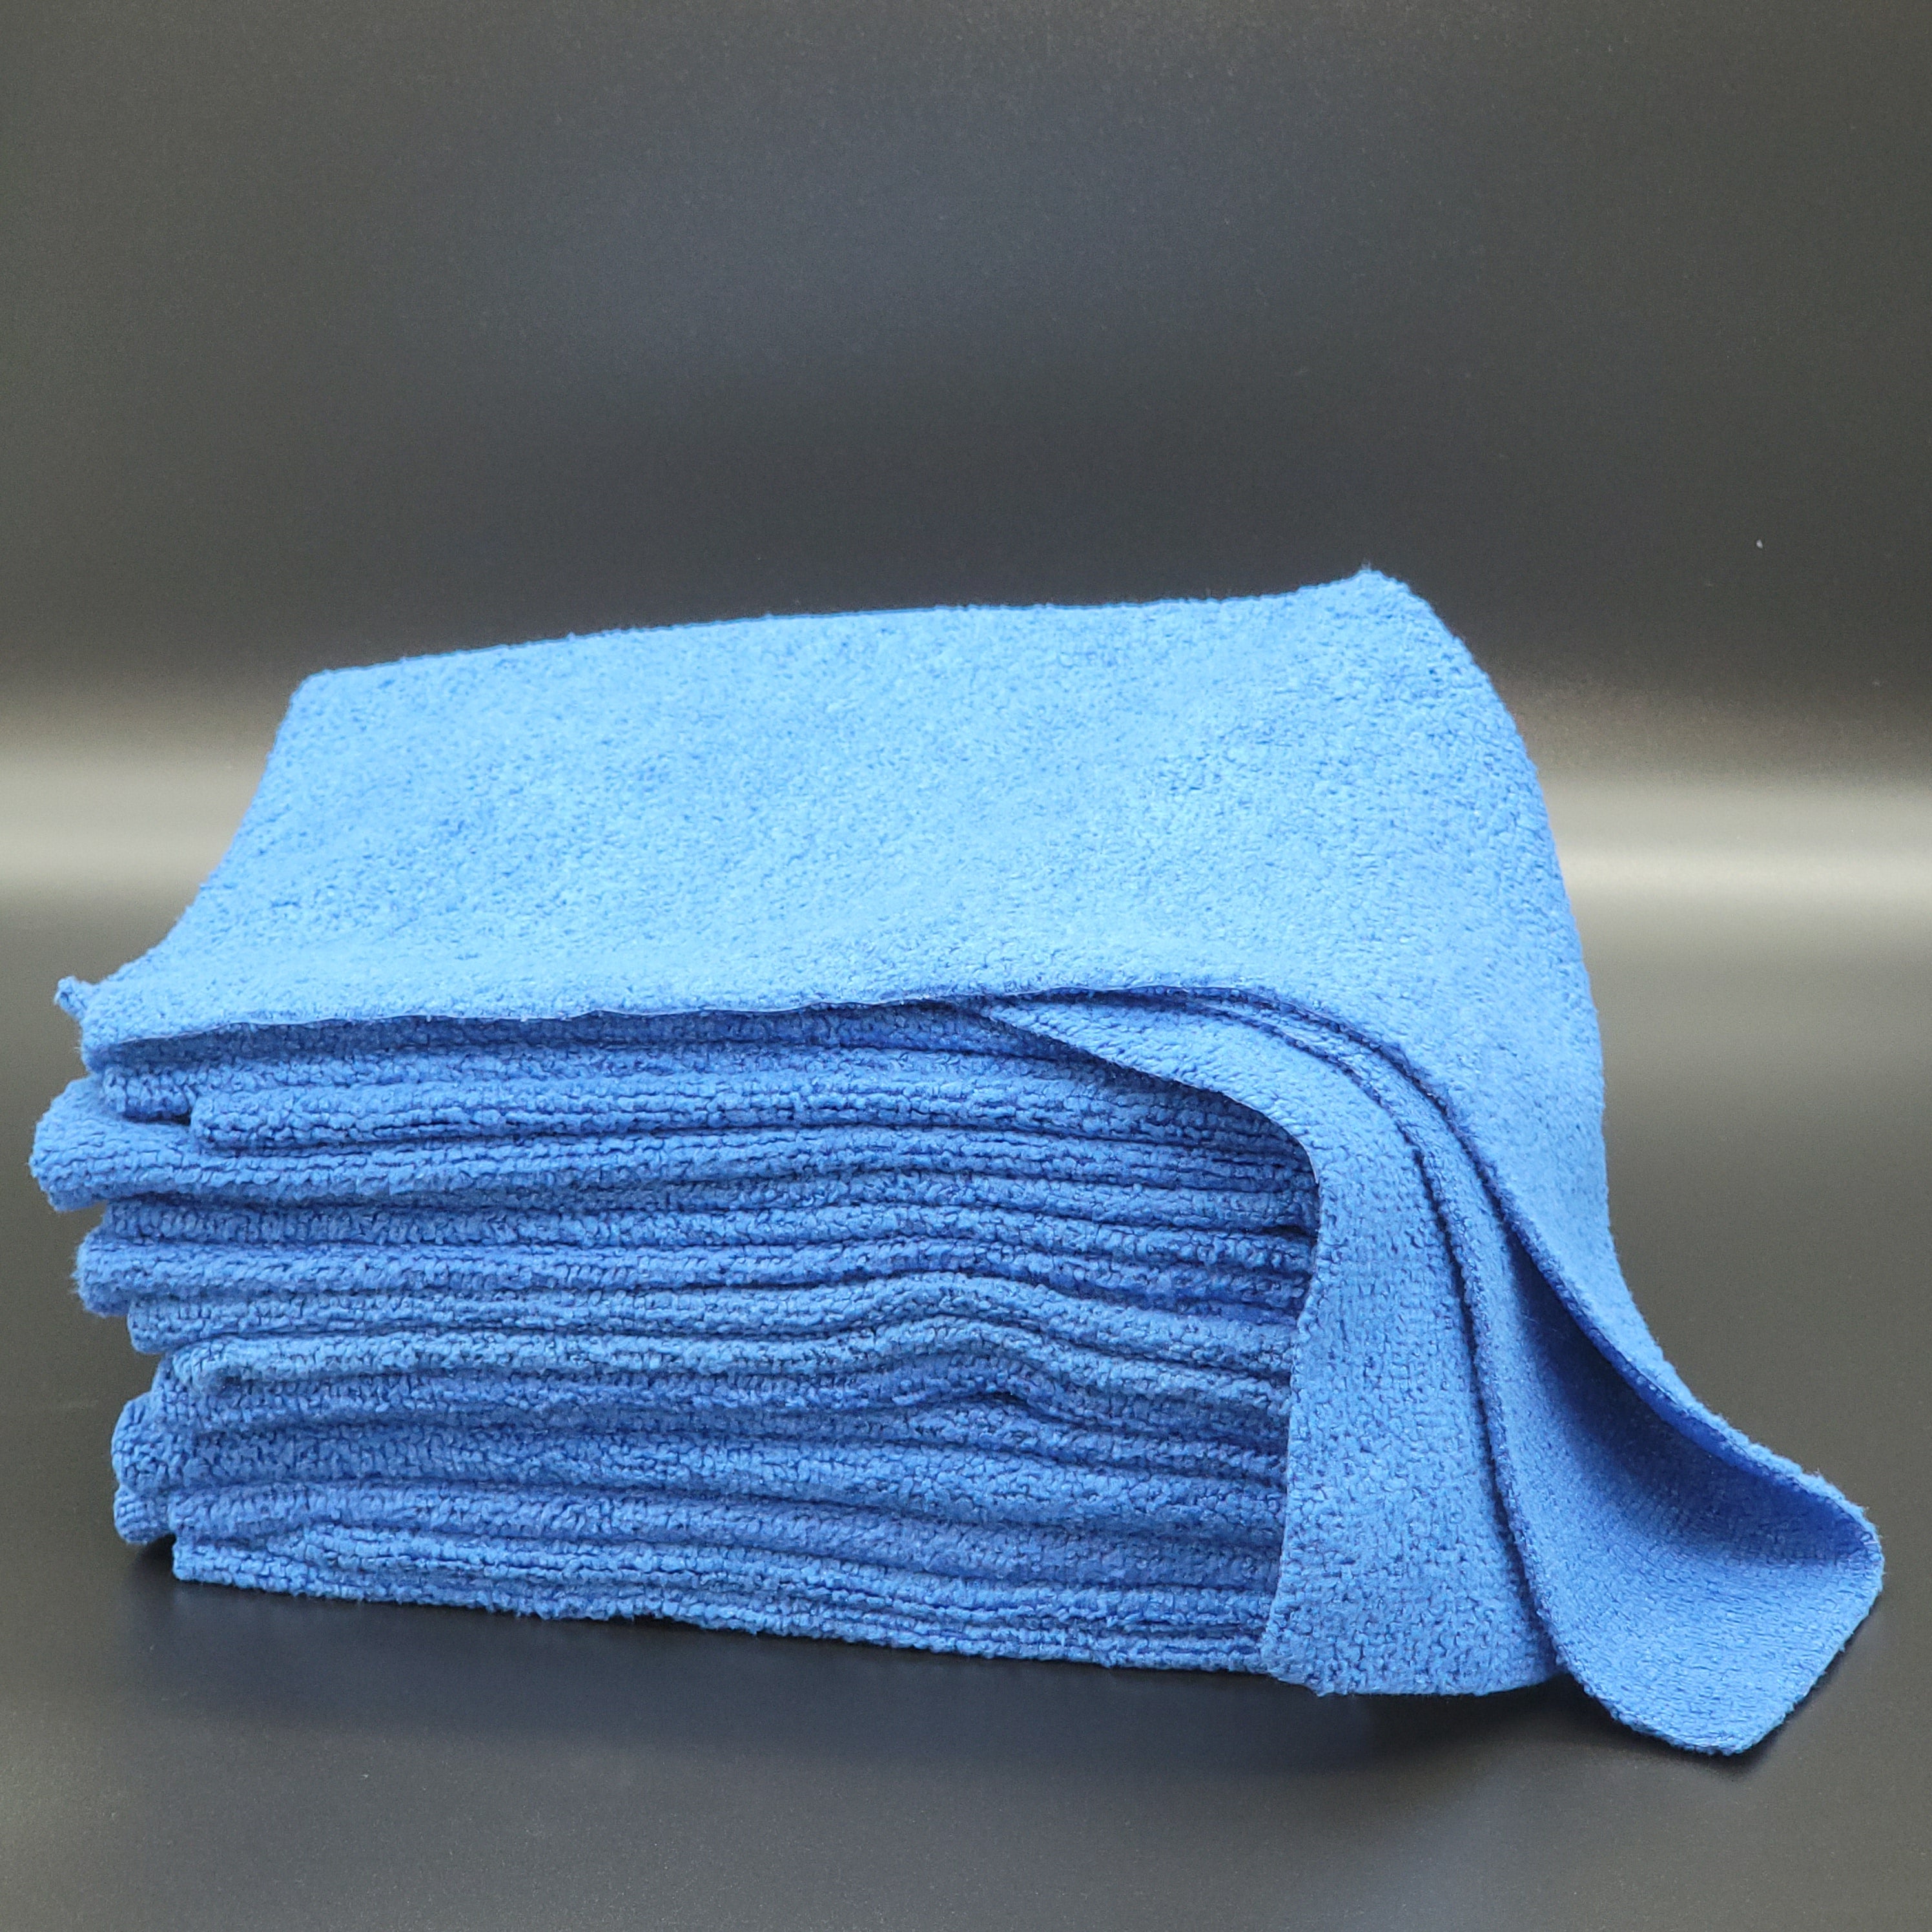 Premium Edgeless Microfiber Towel